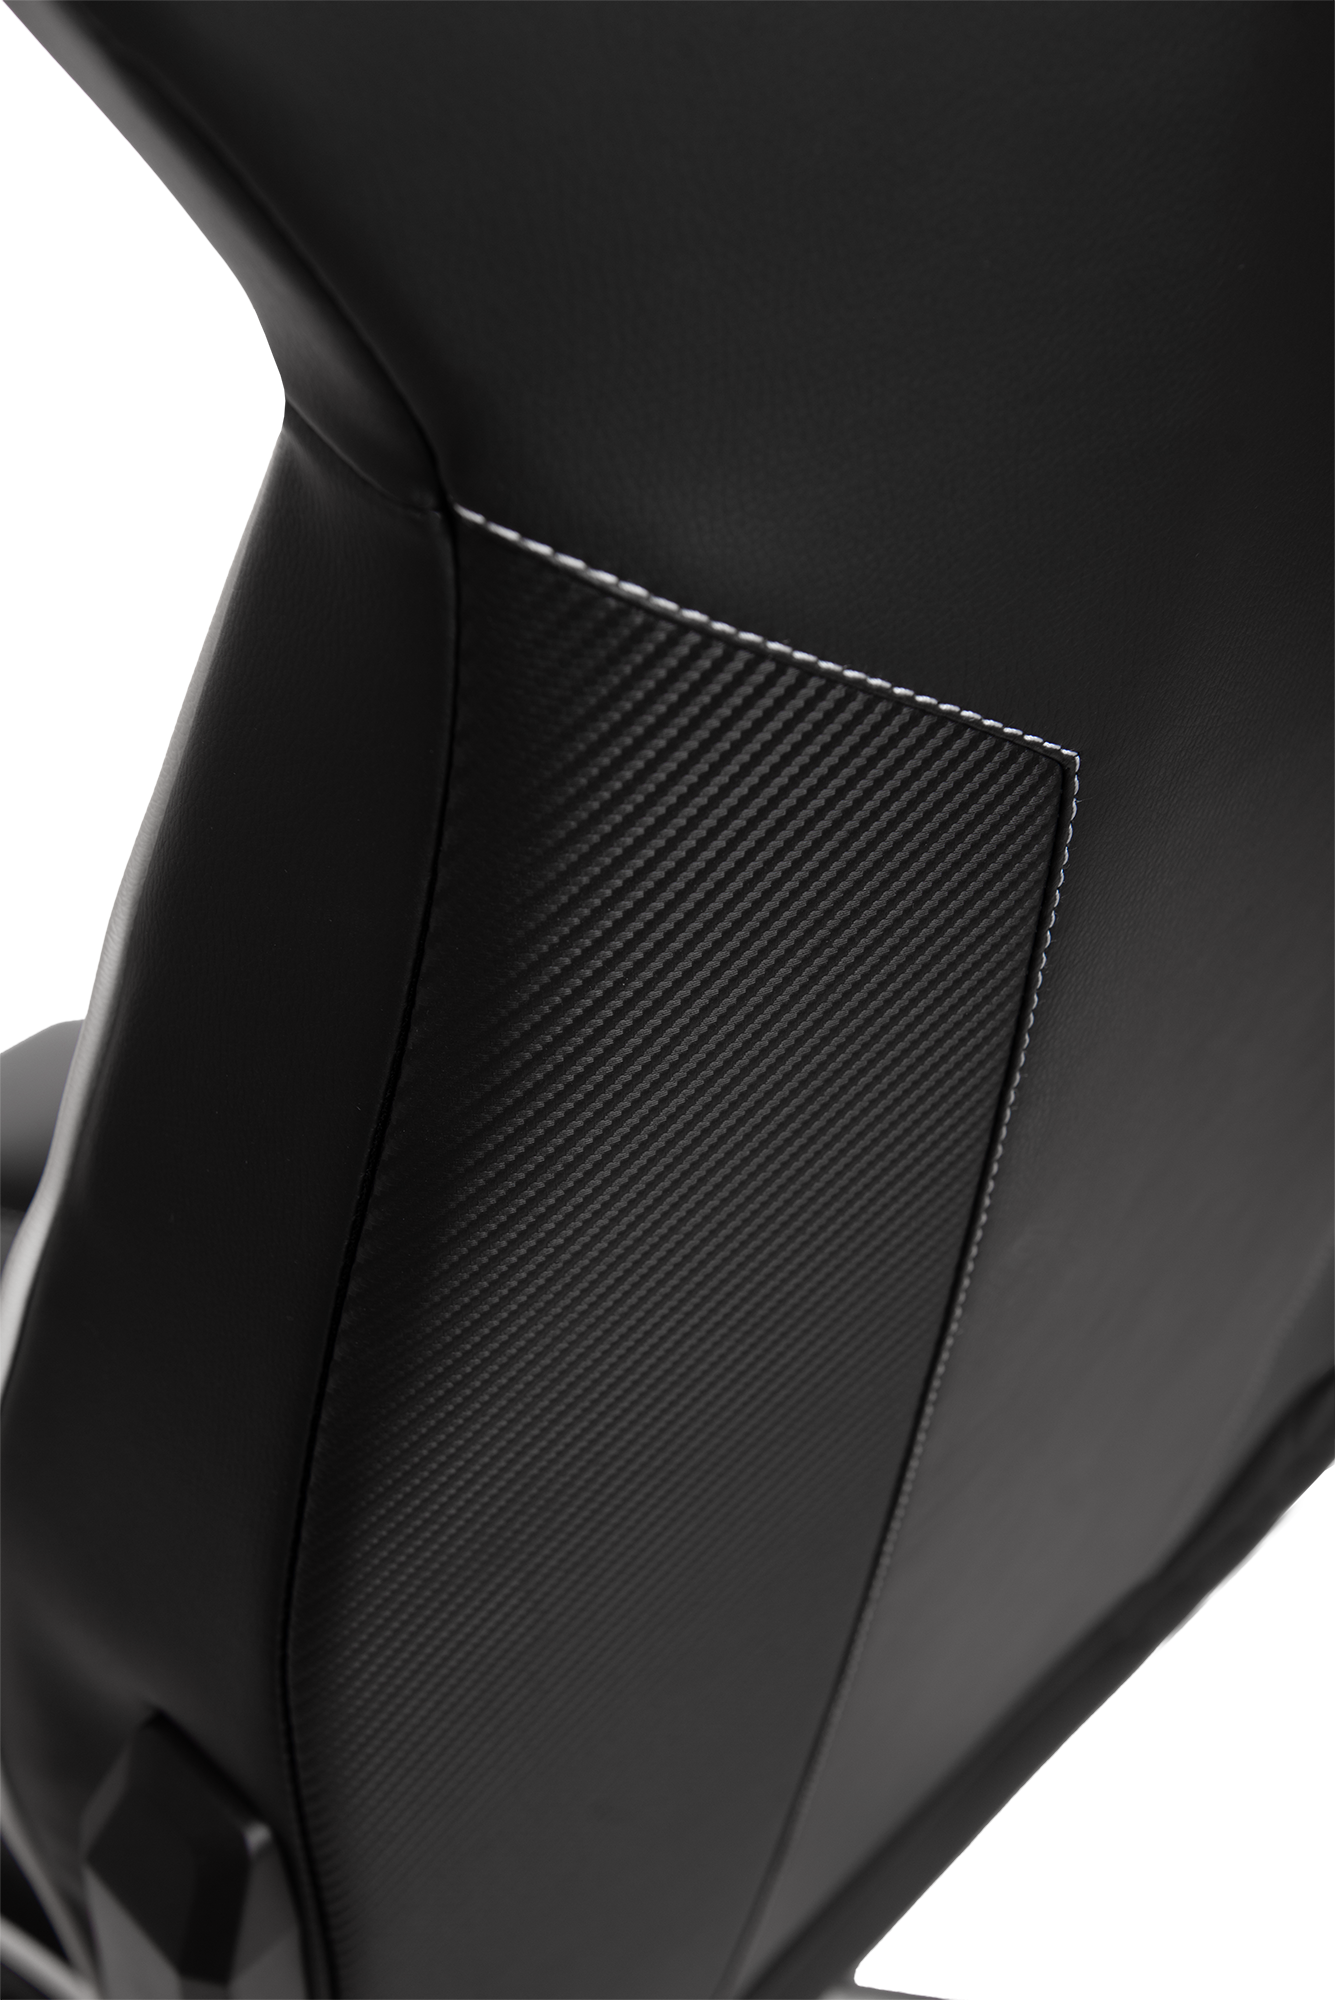 Геймерское кресло GT Racer черное с белым (X-8007 Black/White) - фото 12